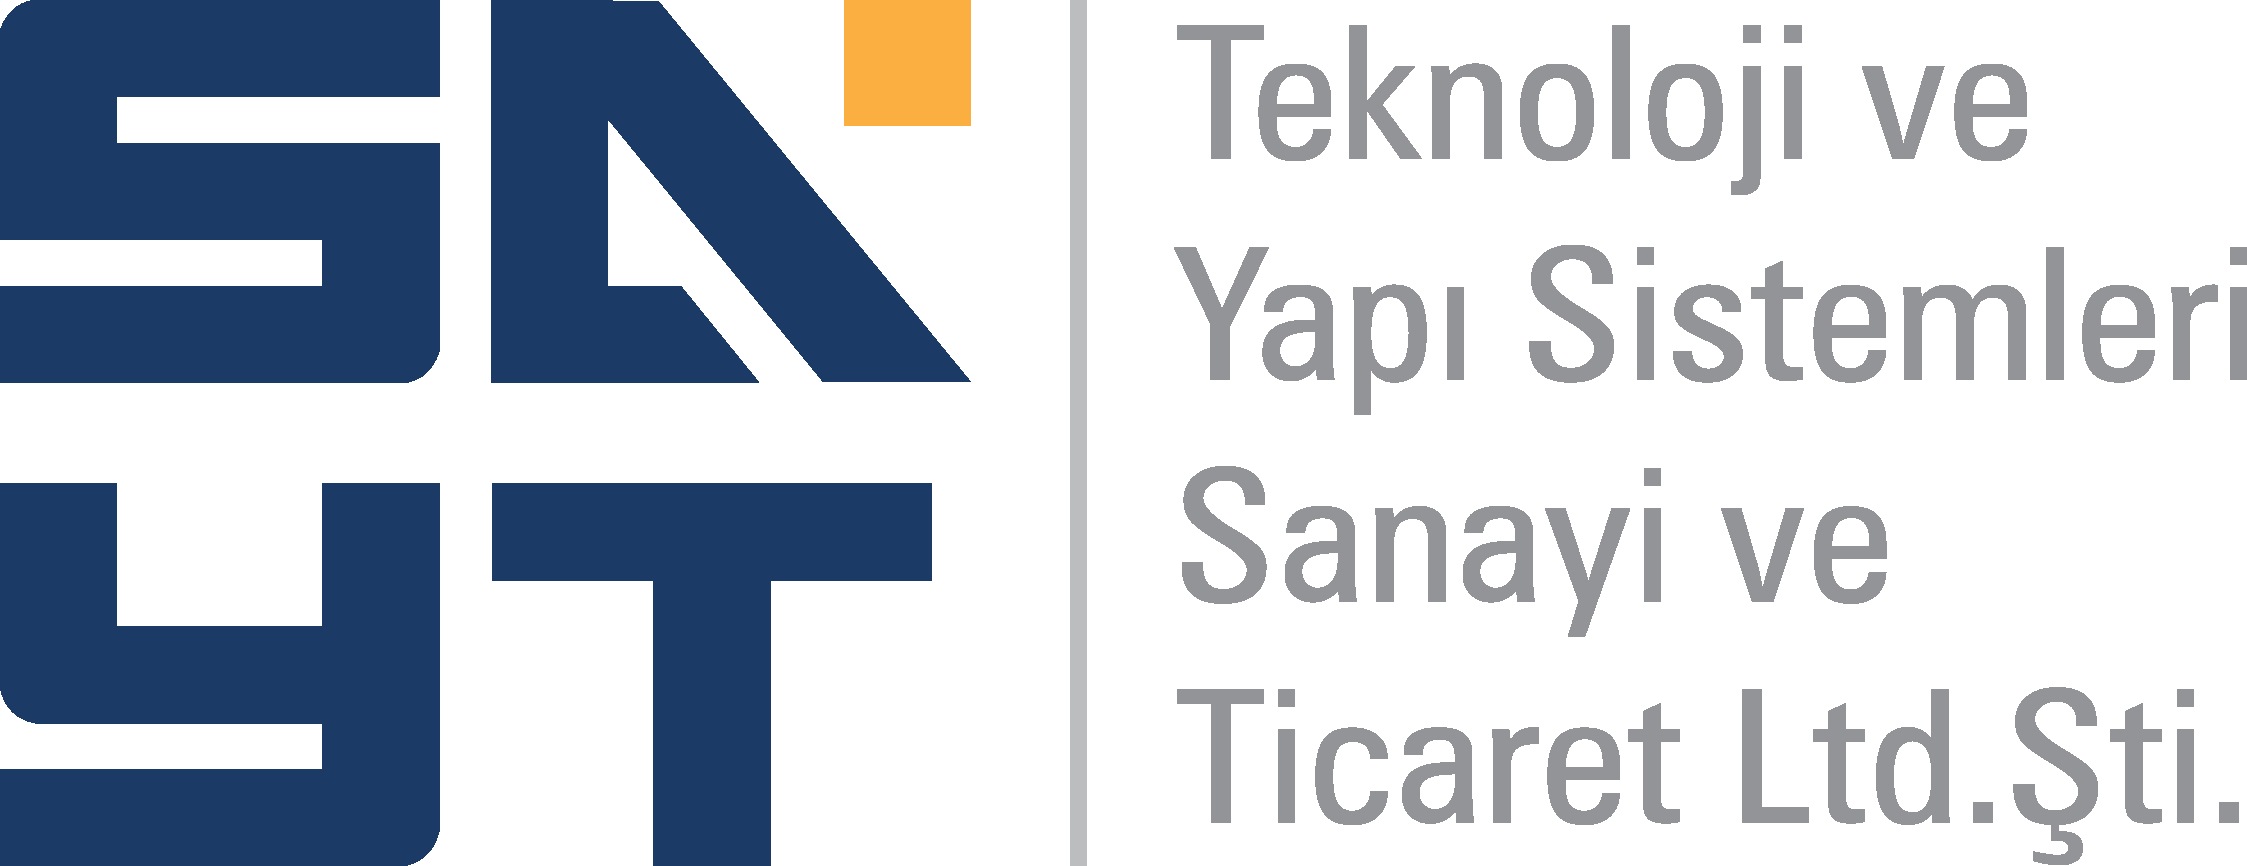 SAYT Teknoloji ve Yapı Sistemleri San.Tic.Ltd.Şti.